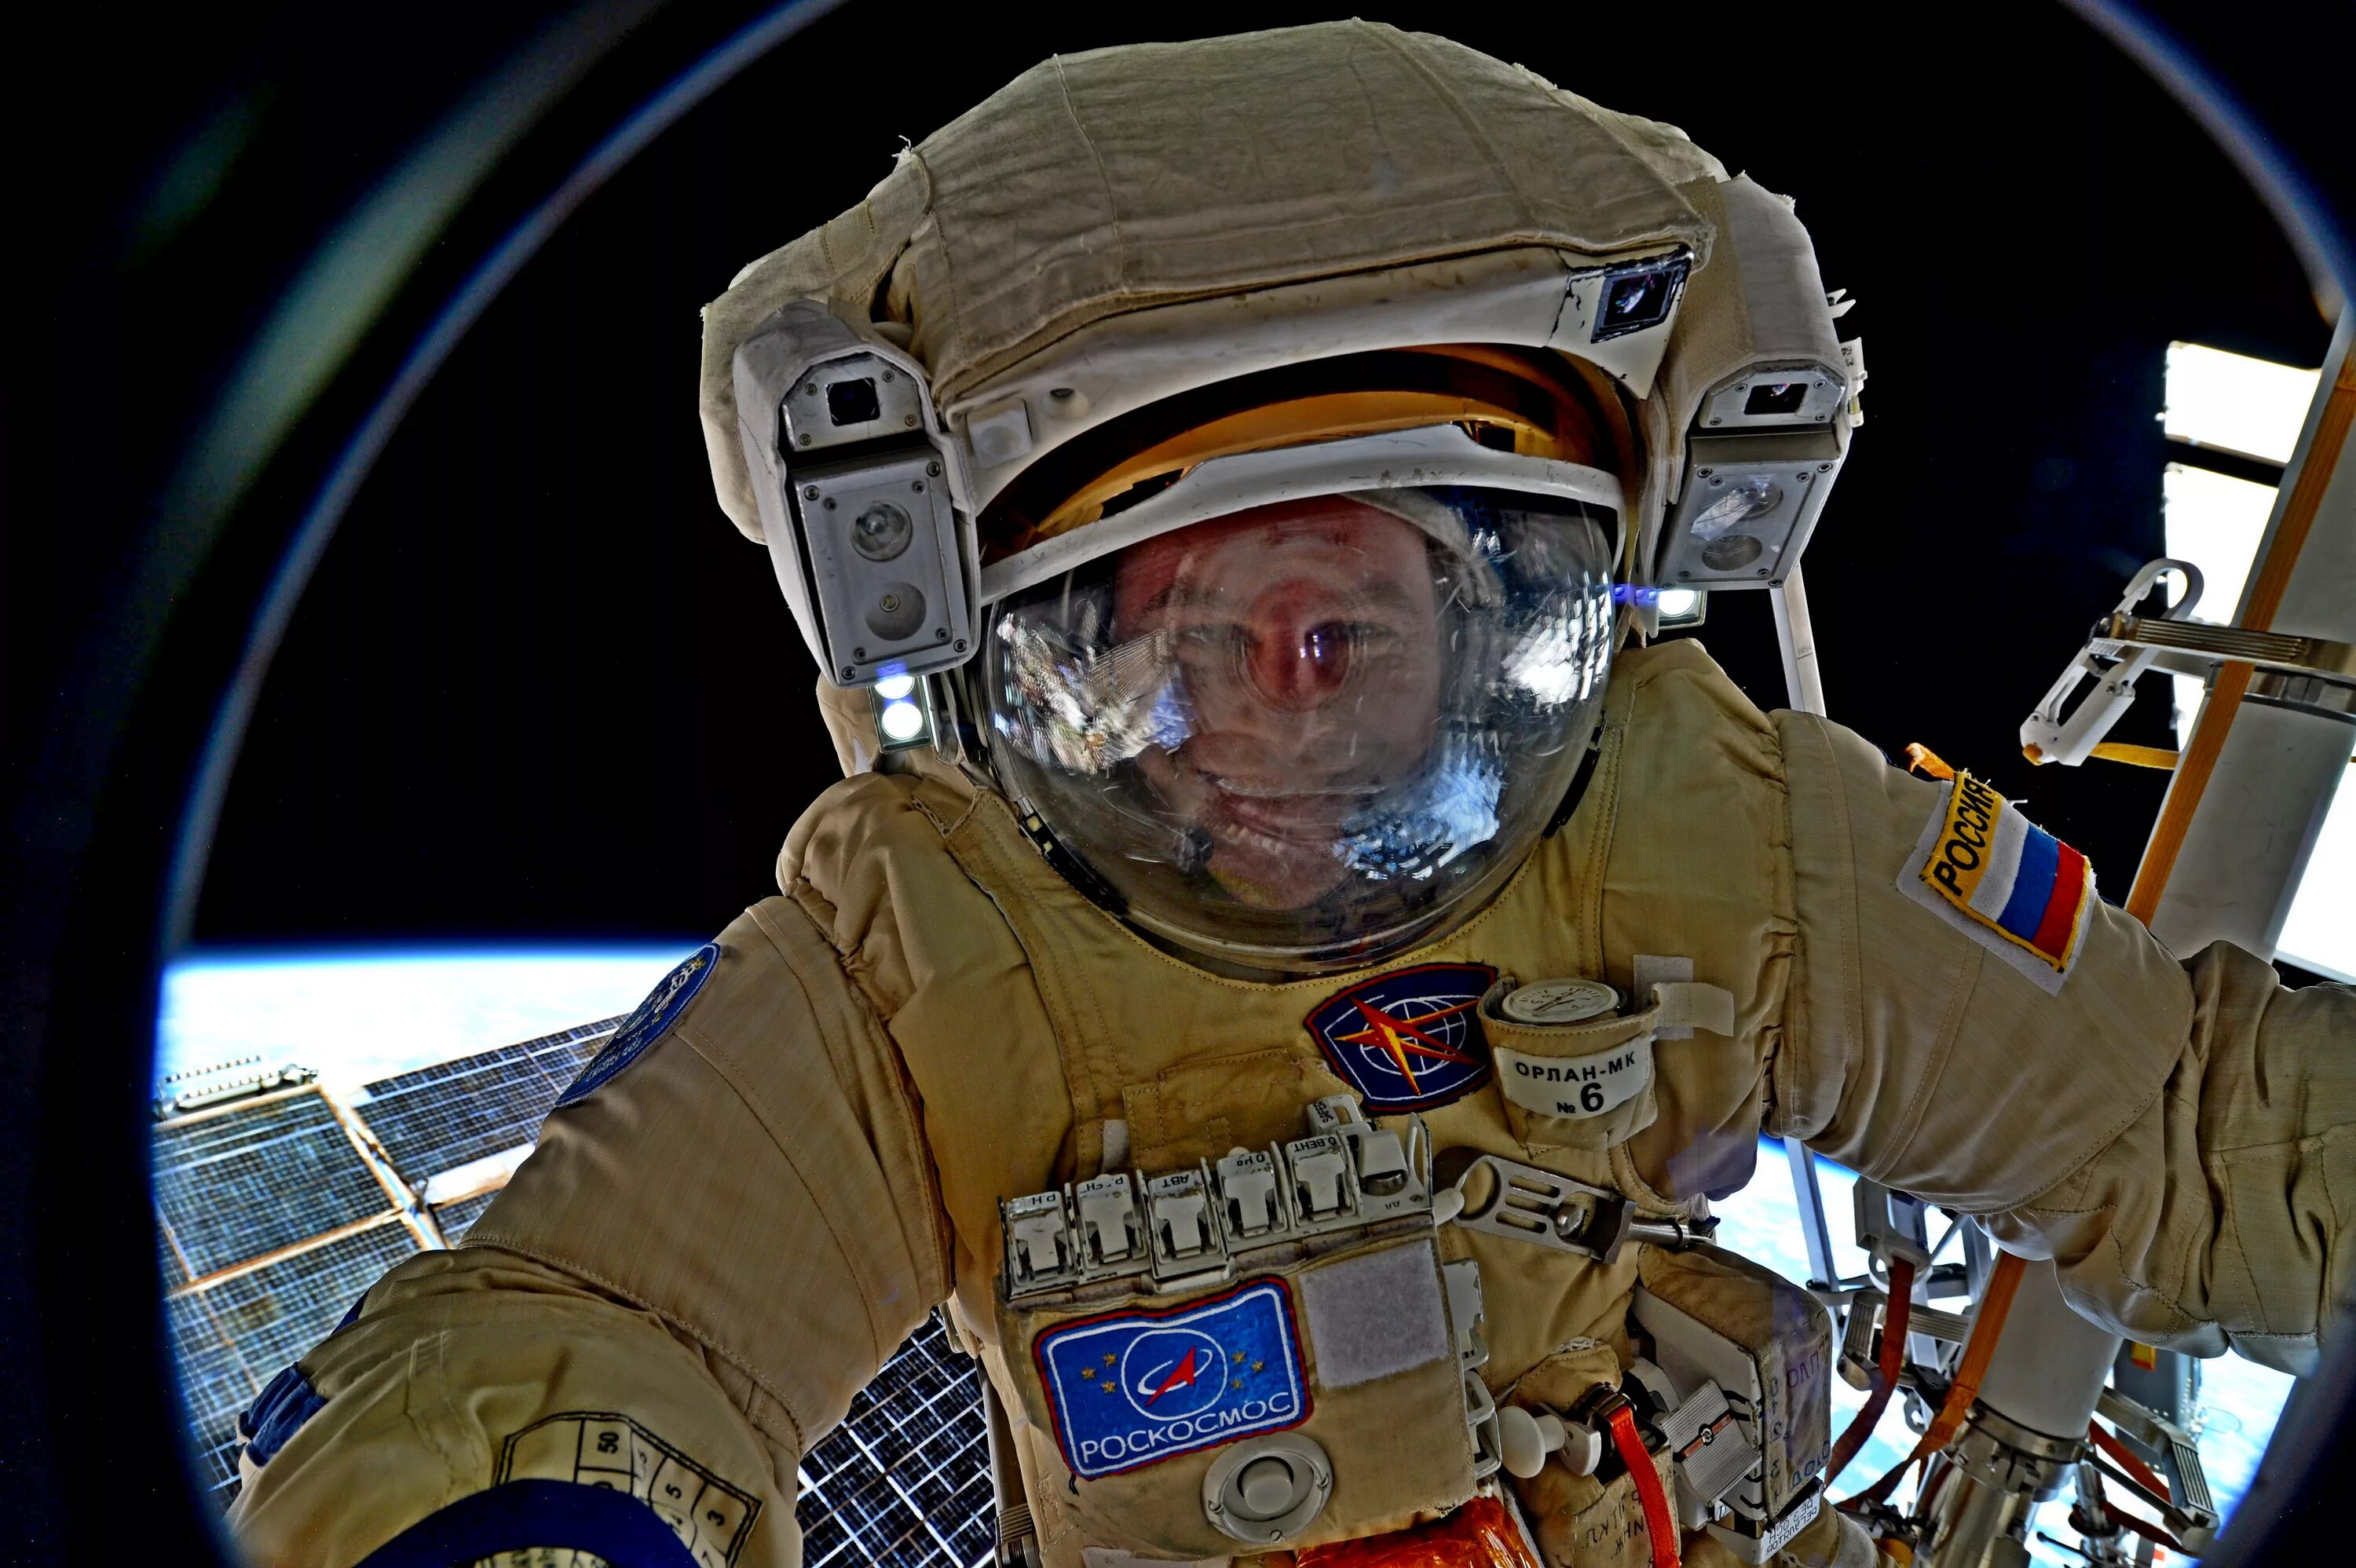 Первый астронавт в открытом космосе. Скафандр Орлан. Космонавты.